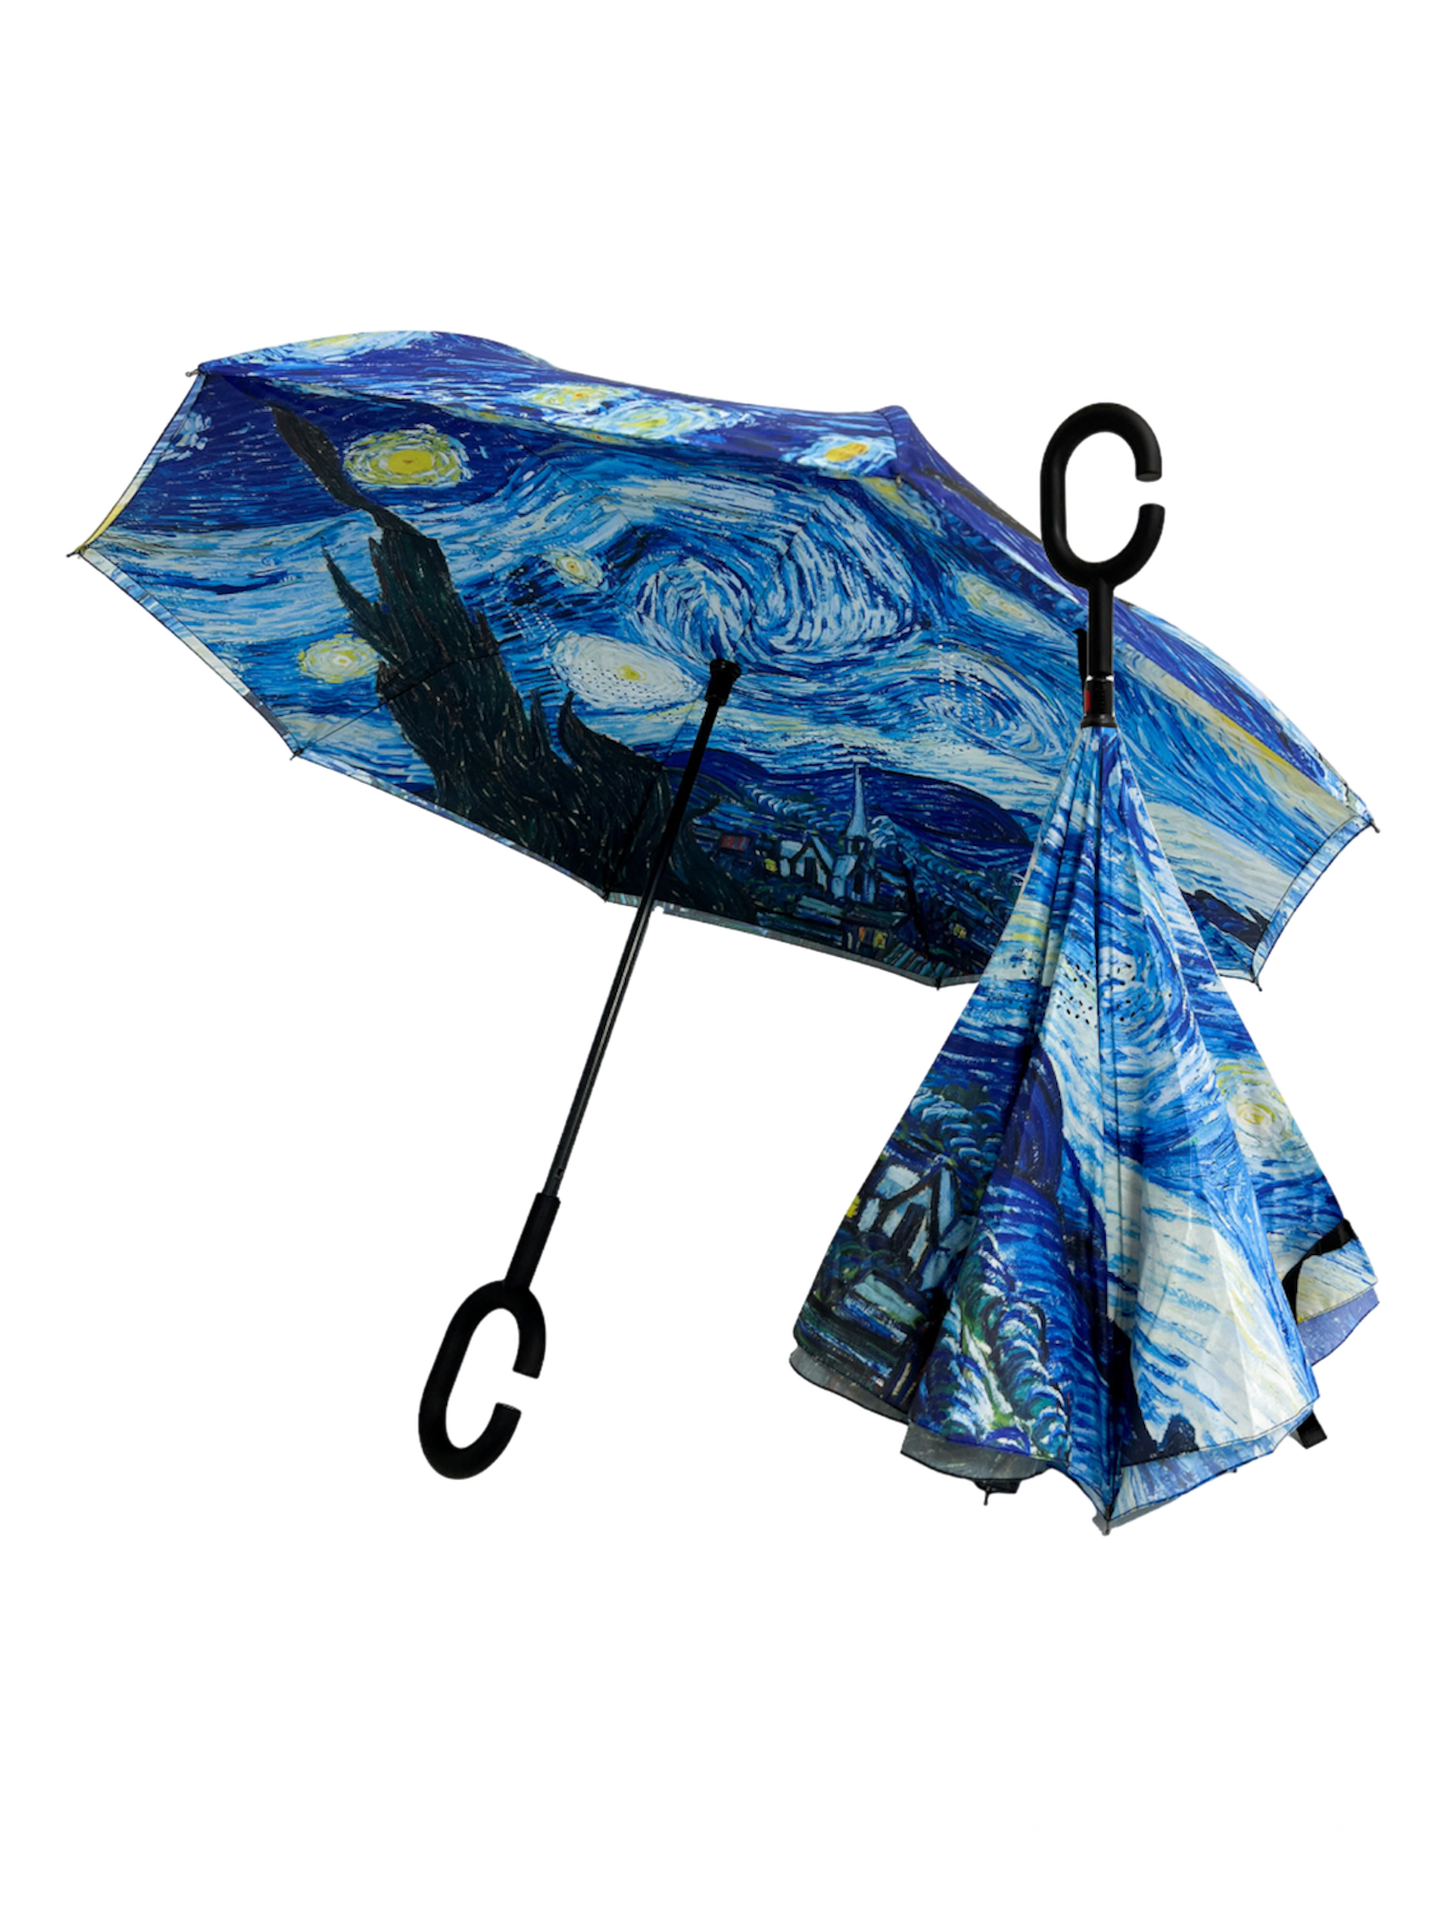 The Inverted Umbrella